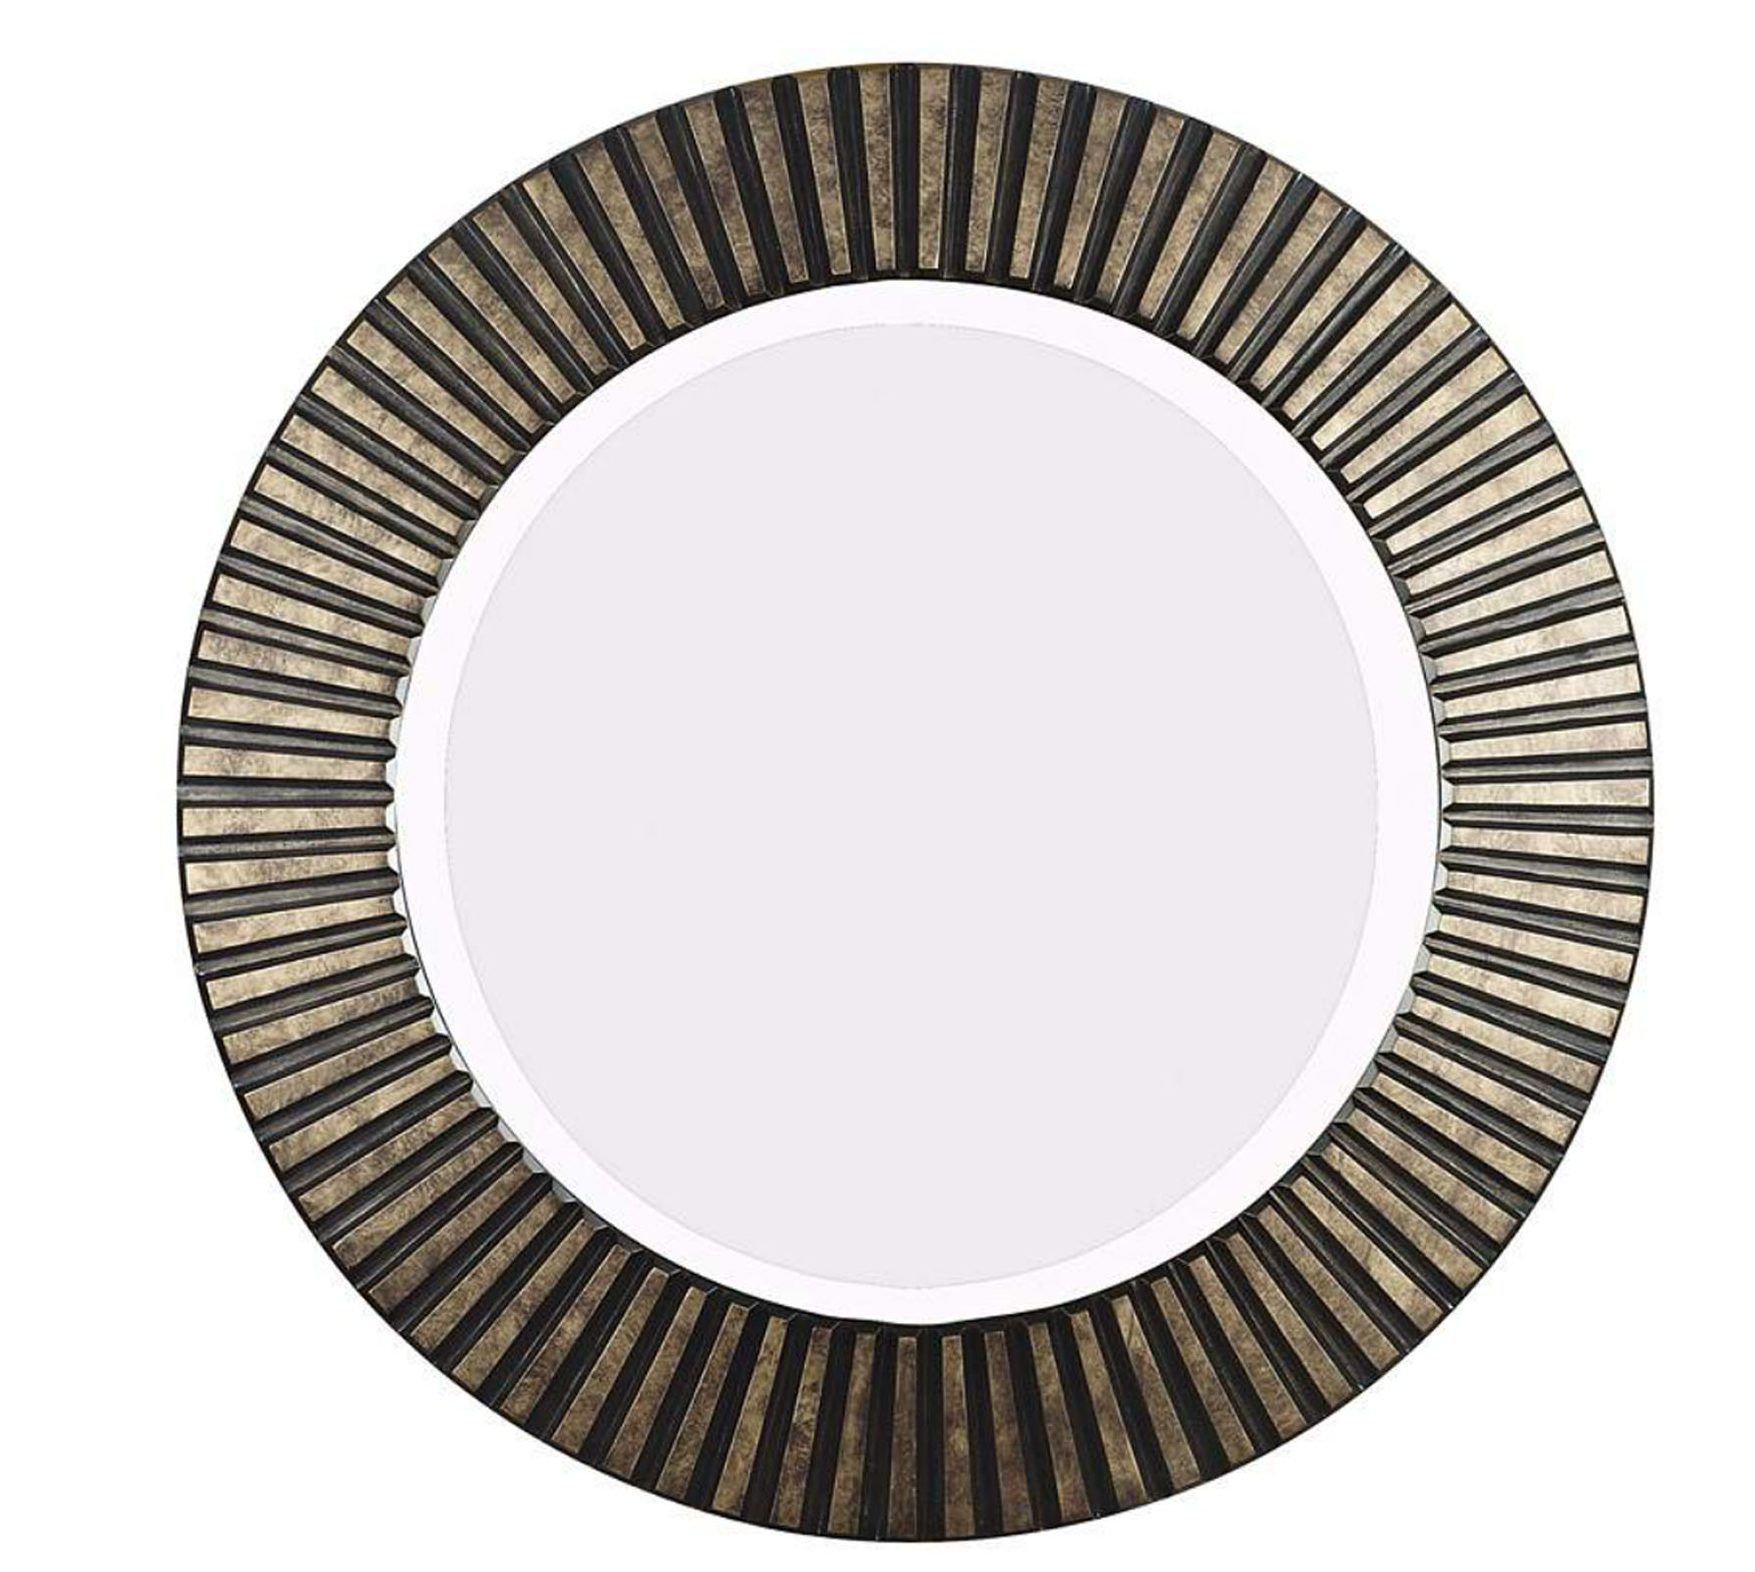 Textured bronze mirror round save or splurge